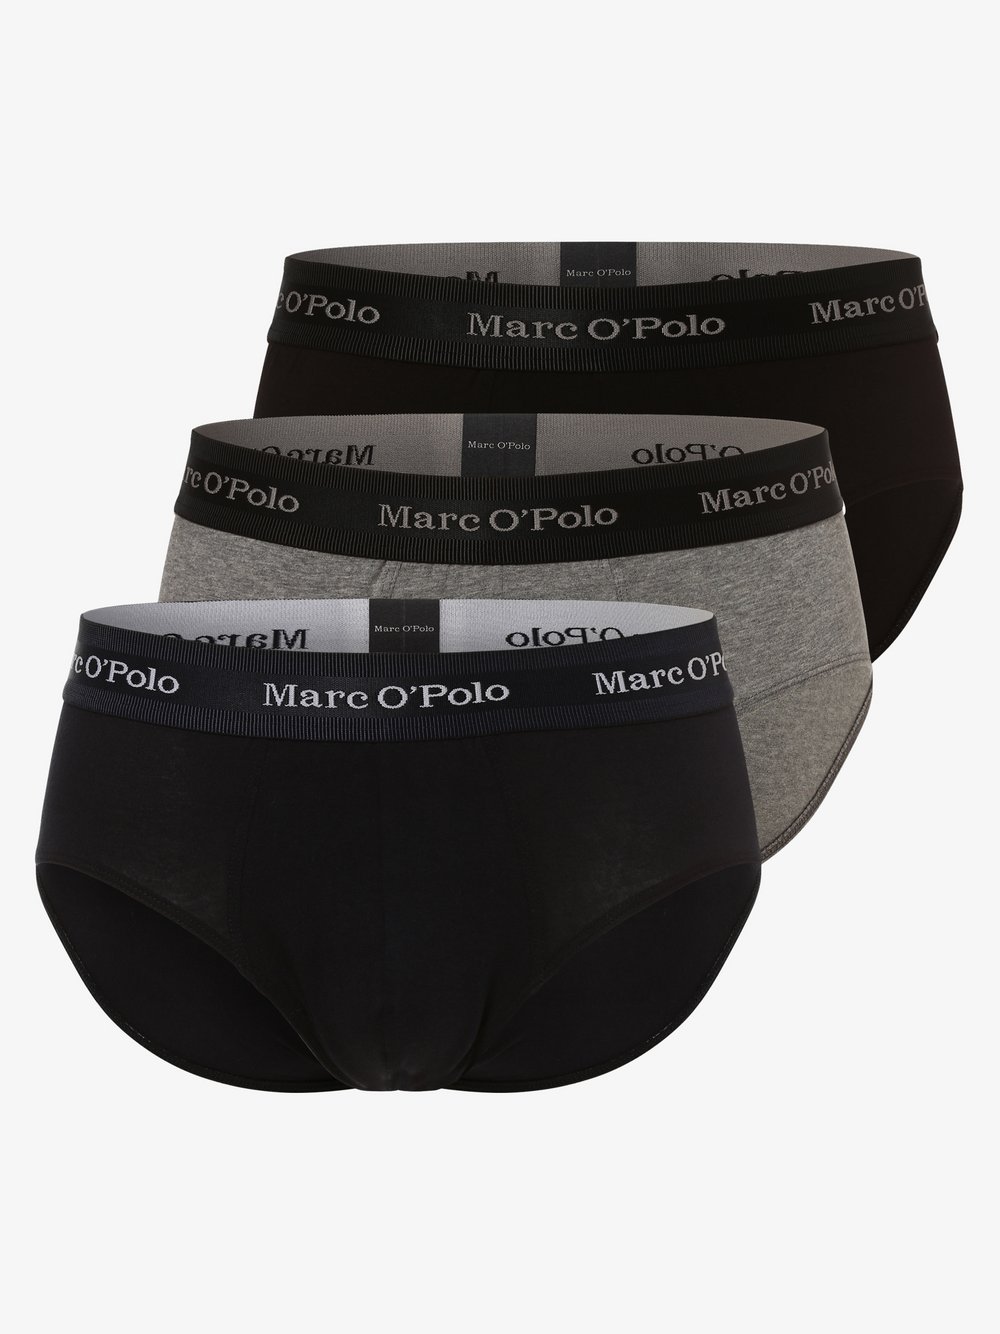 Marc O'Polo - Slipy męskie pakowane po 3 szt., niebieski|szary|czarny